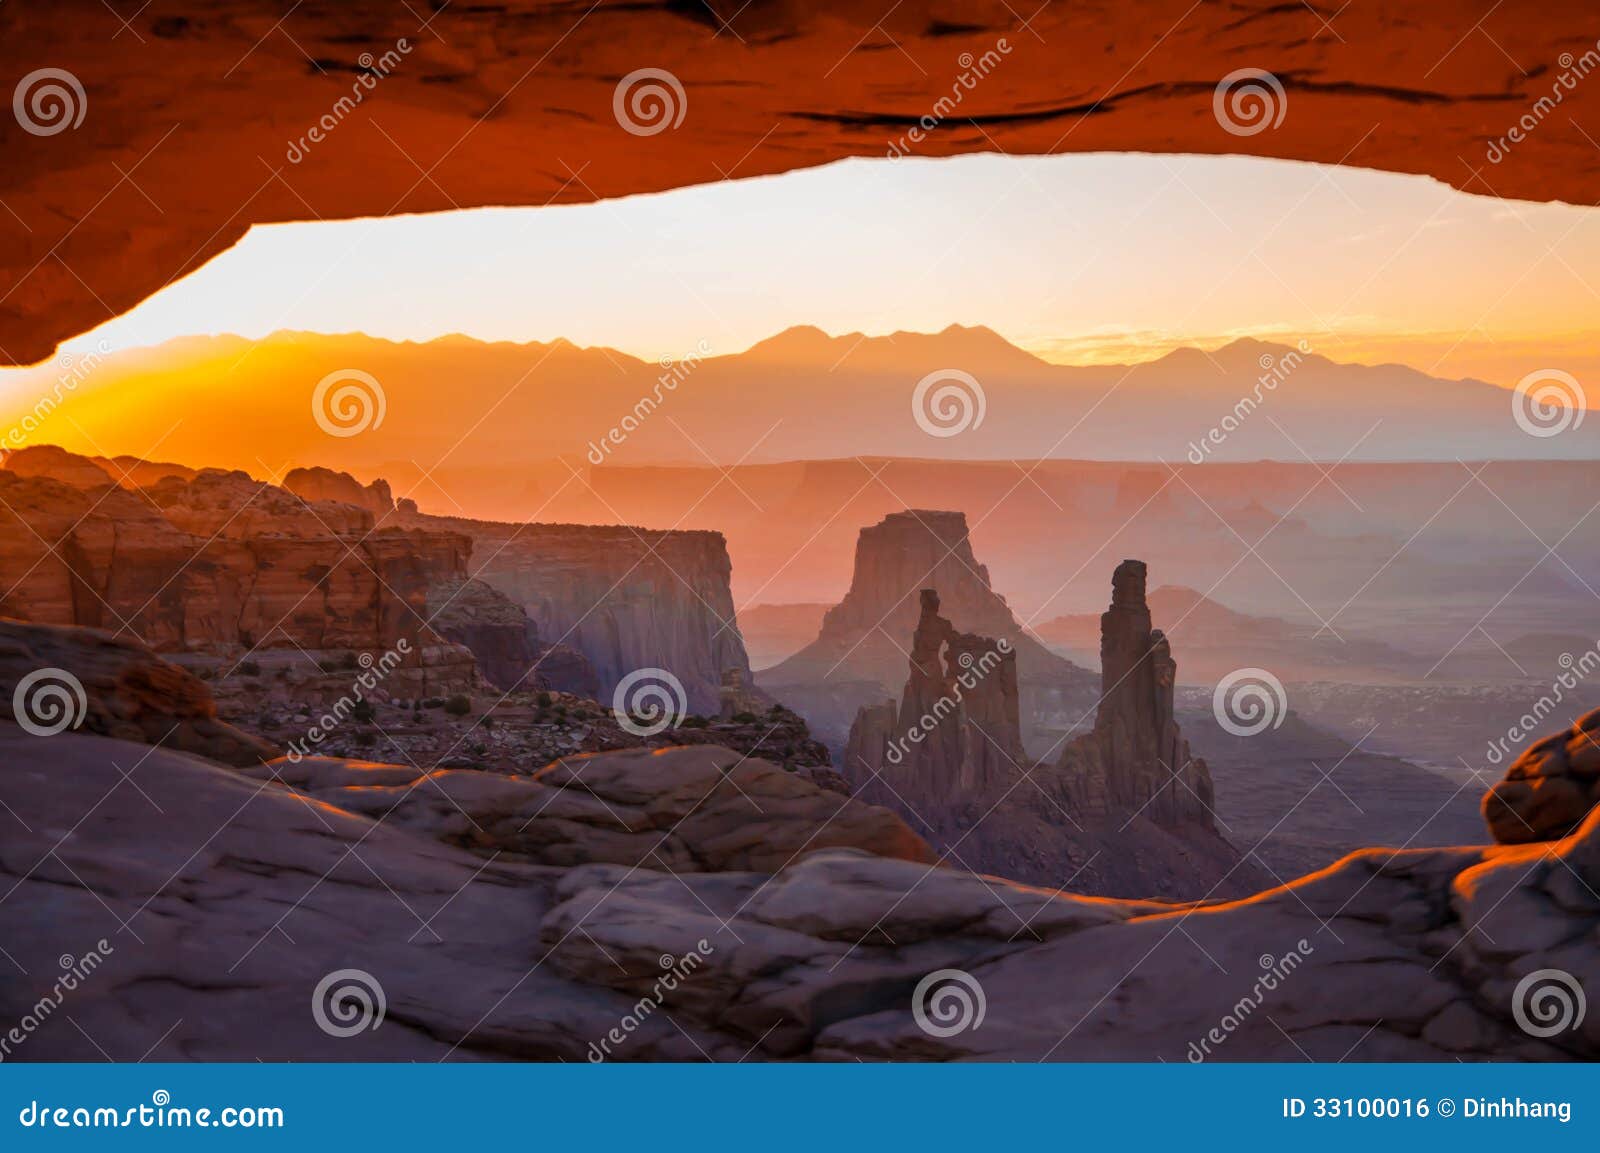 mesa arch, canyonlands national park, utah, usa.